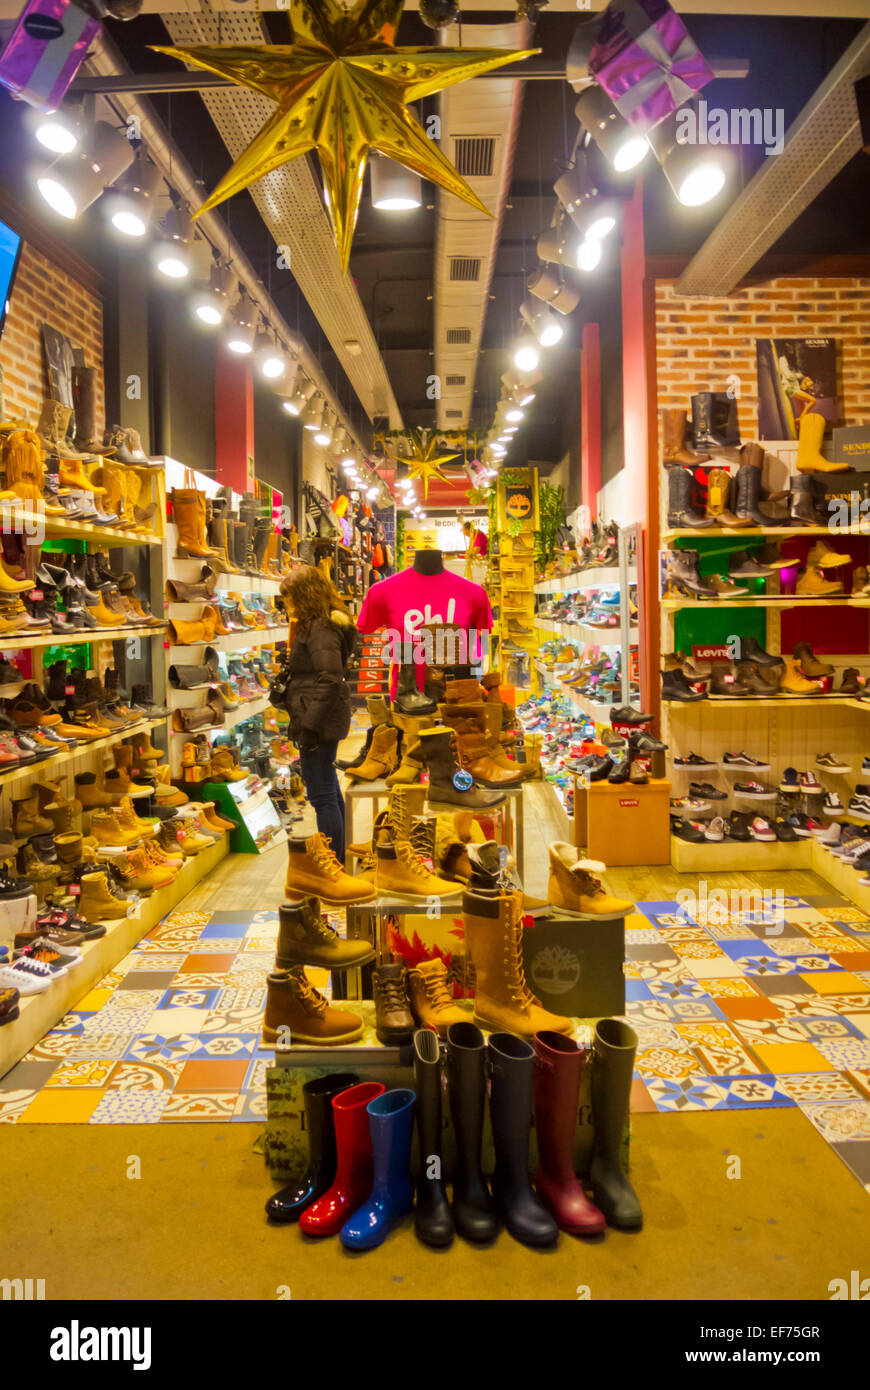 Magasin de chaussures, la rue Calle Fuencarral, quartier Malasana, Madrid, Espagne Banque D'Images